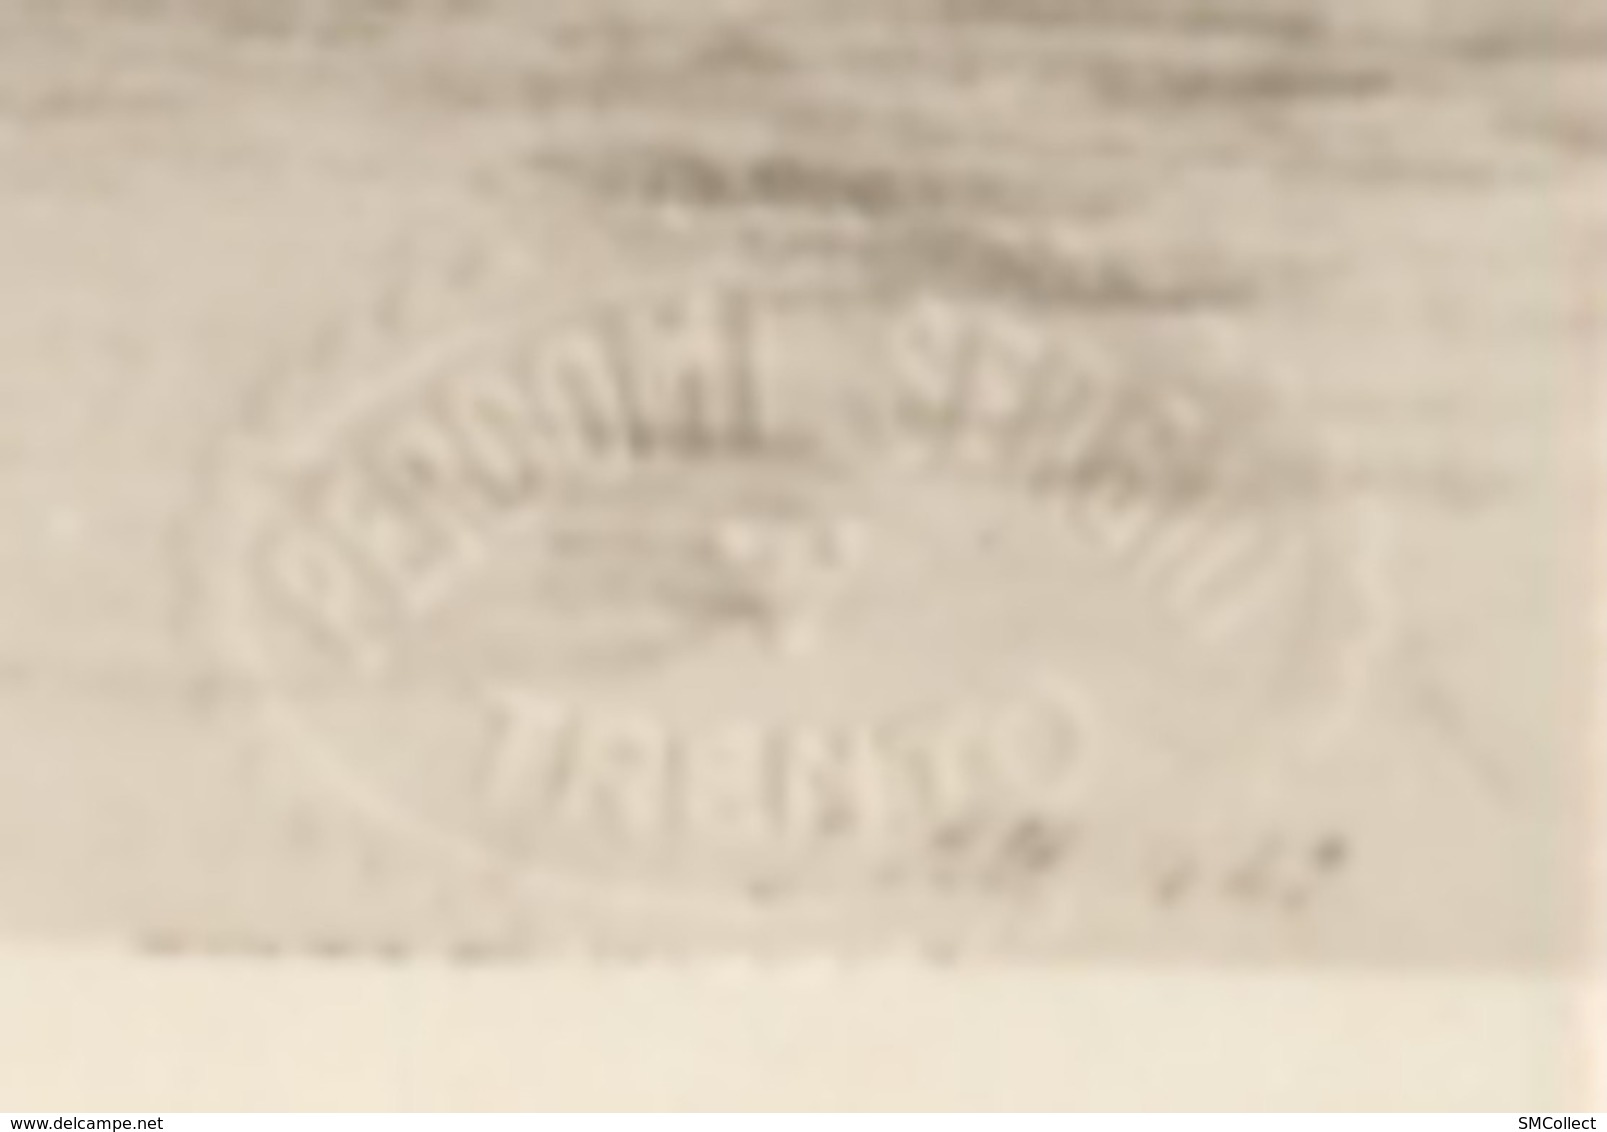 Italie. Trento 1830-1850. Lot de 6 cartes toutes estampillées Sergio Perdomi, cachet en relief voir photo 7 (9411)